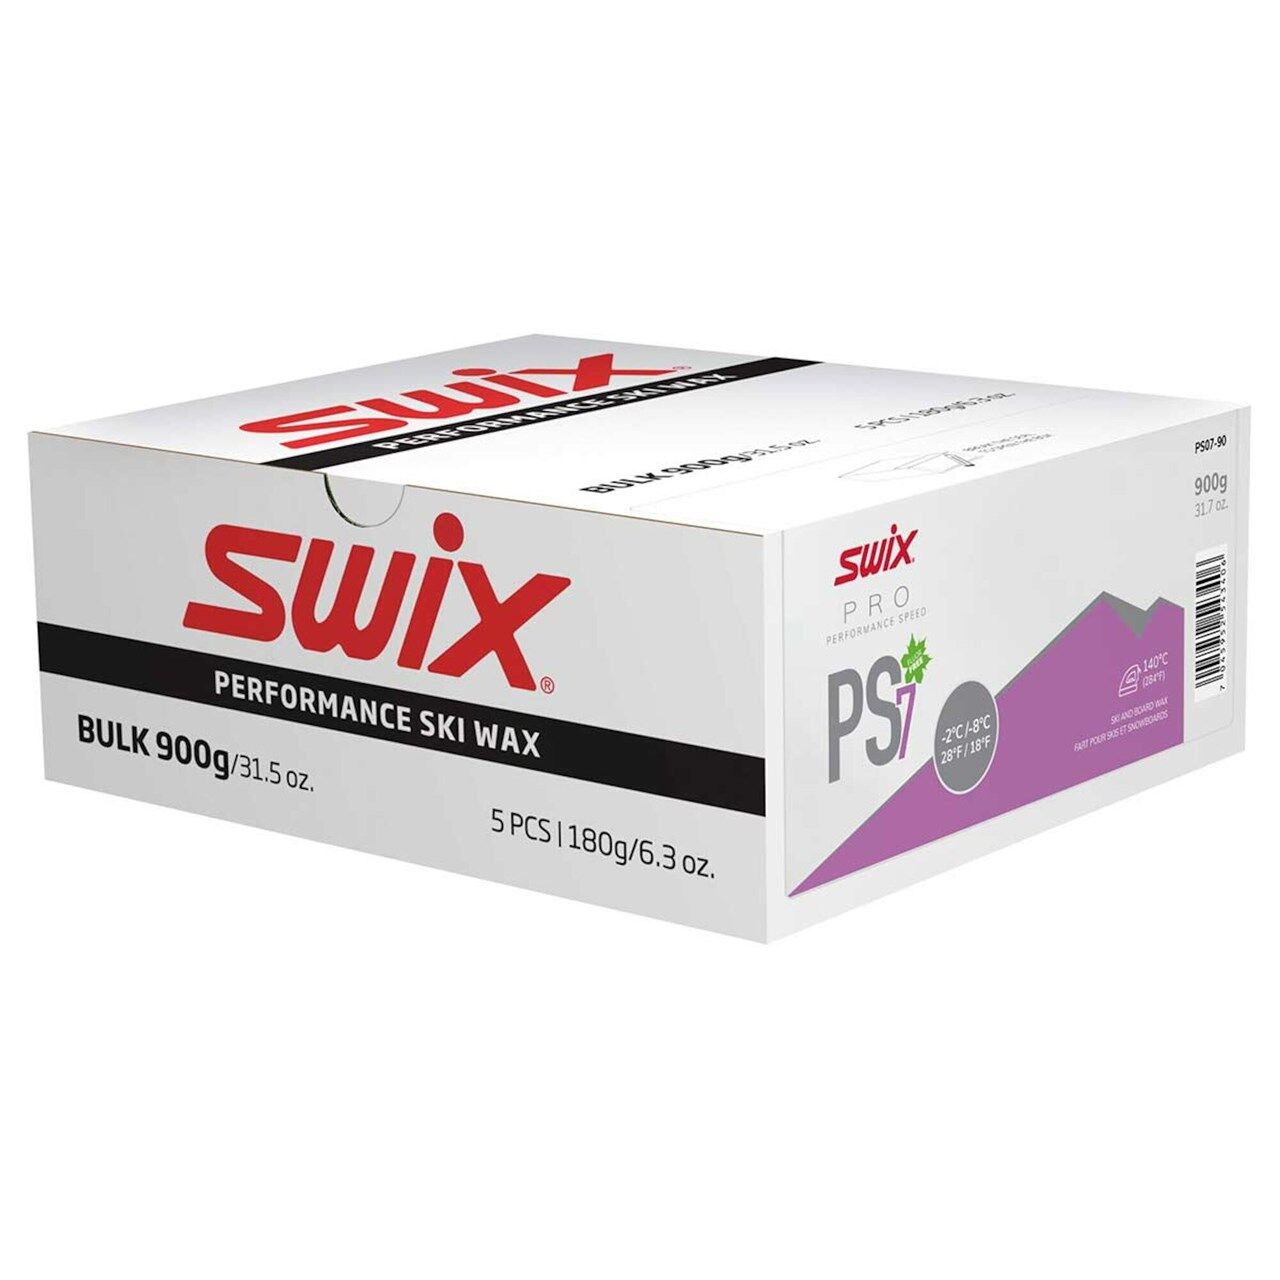 Swix PS7 Violet, -2°C/-8°C, 900g PS07-90 2020